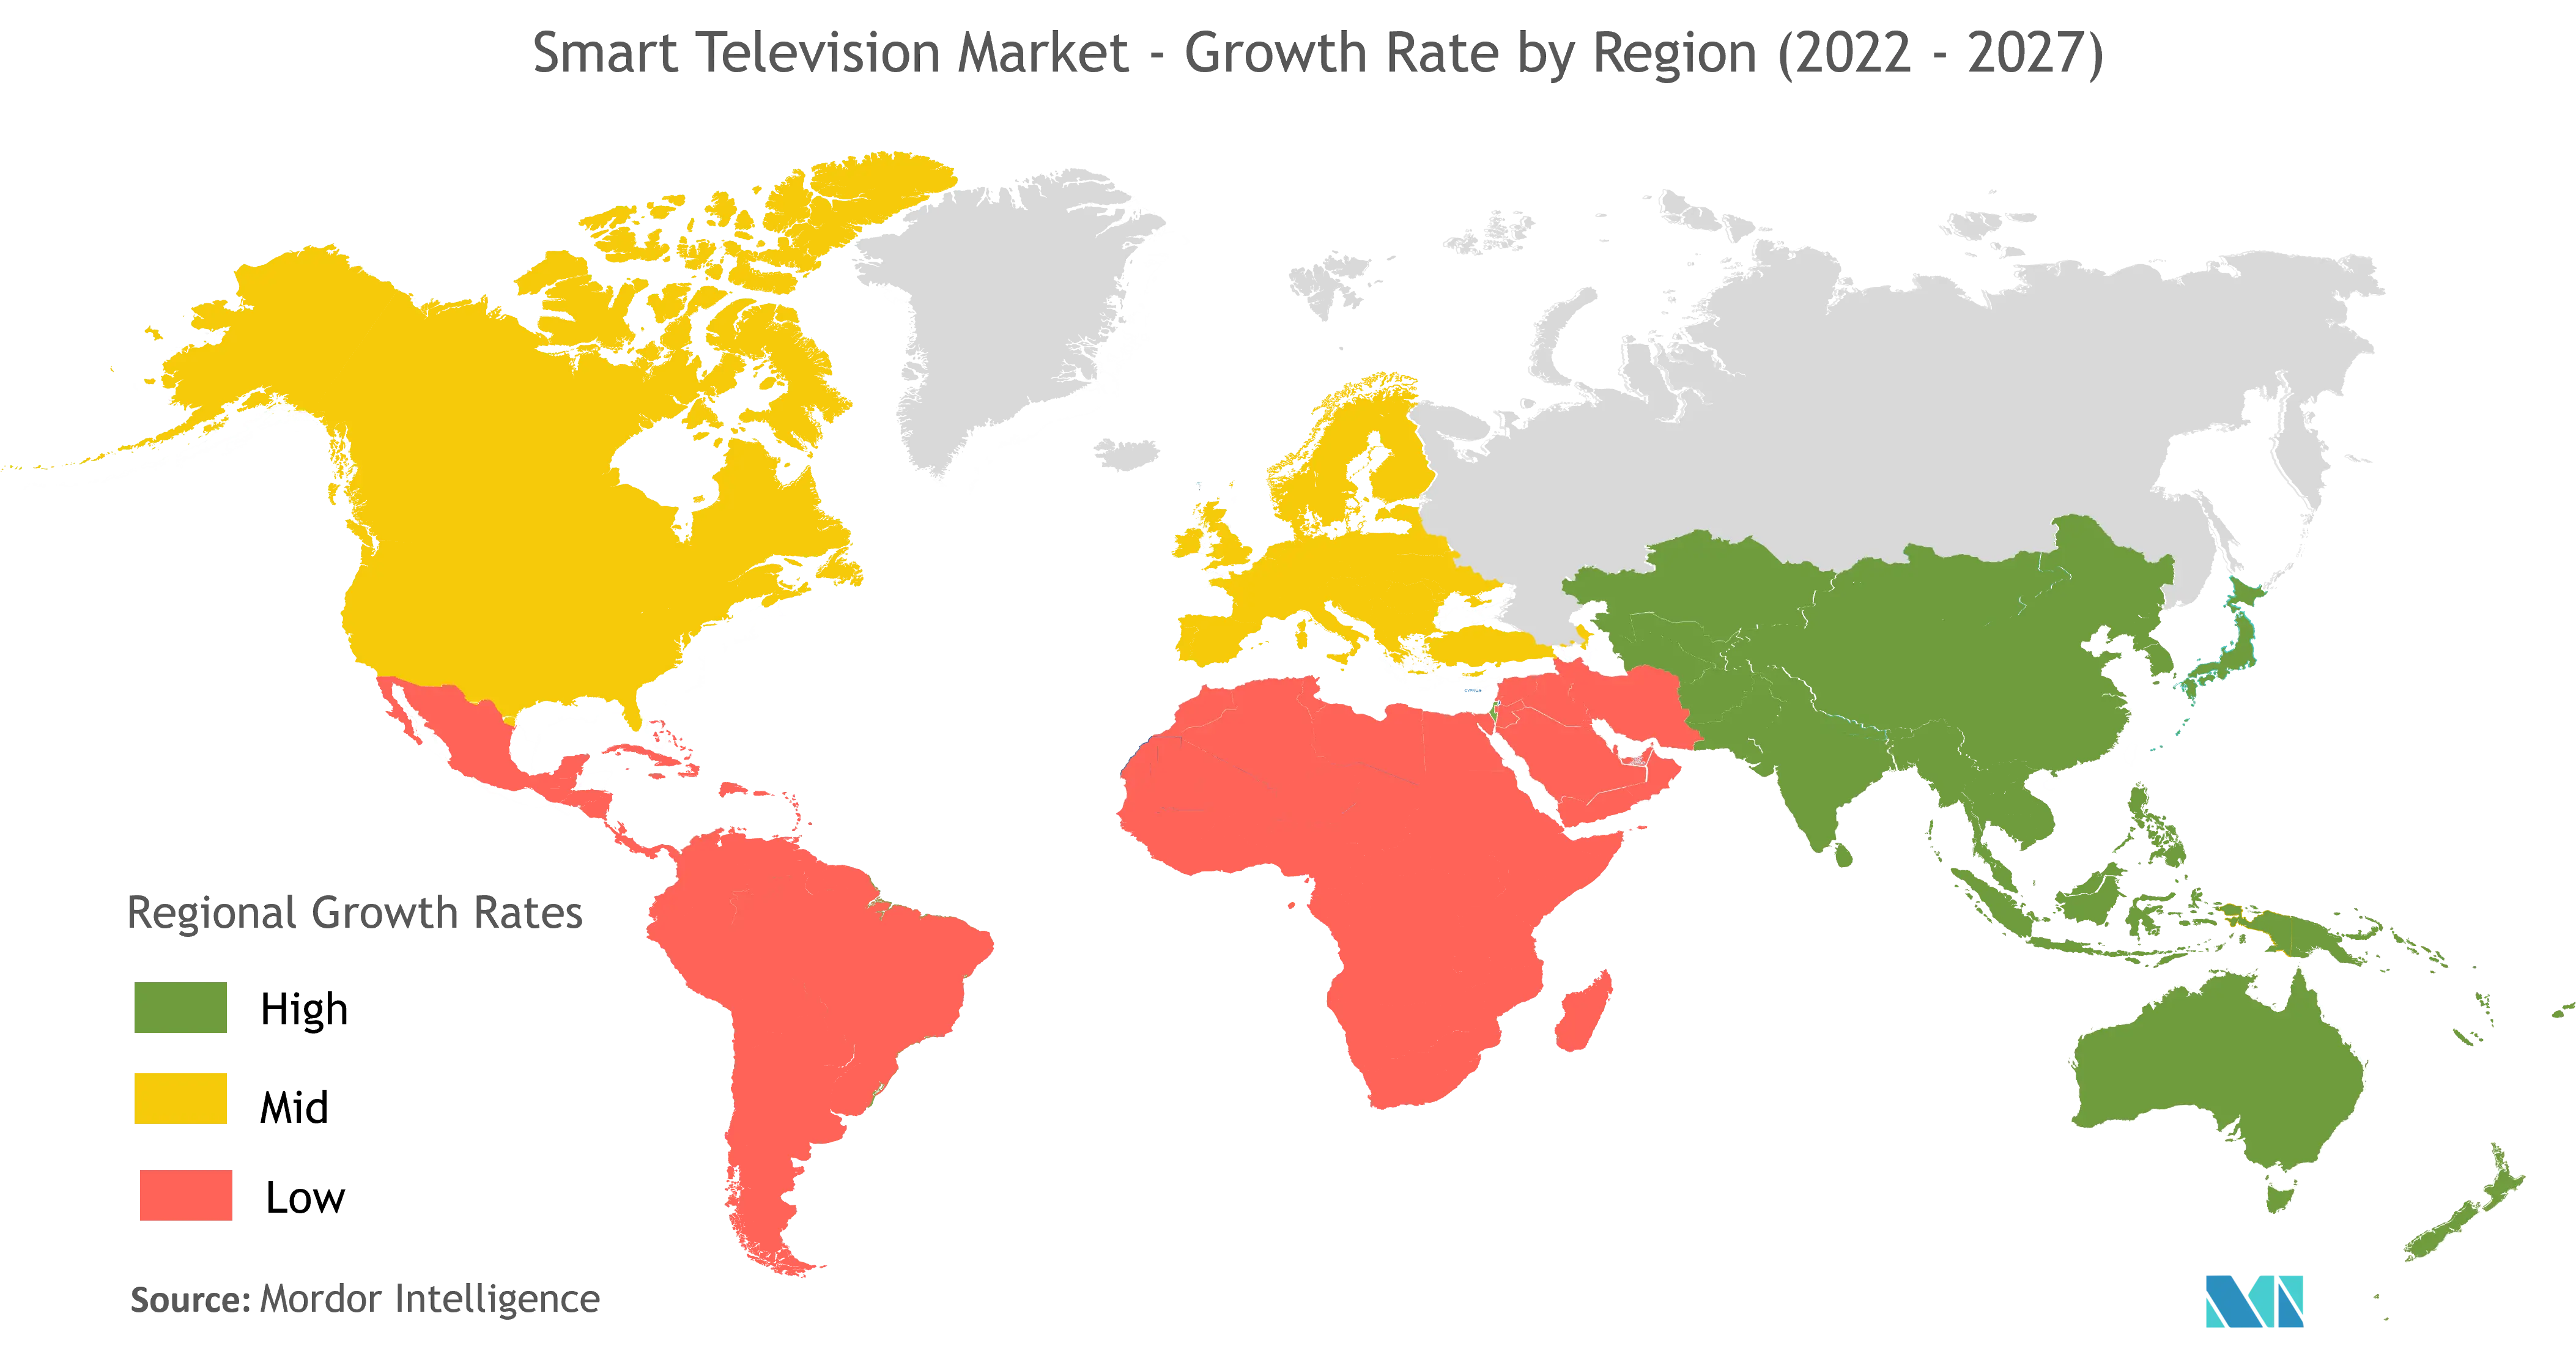 Mercado de Smart TV - Tasa de crecimiento por región (2022-2027)